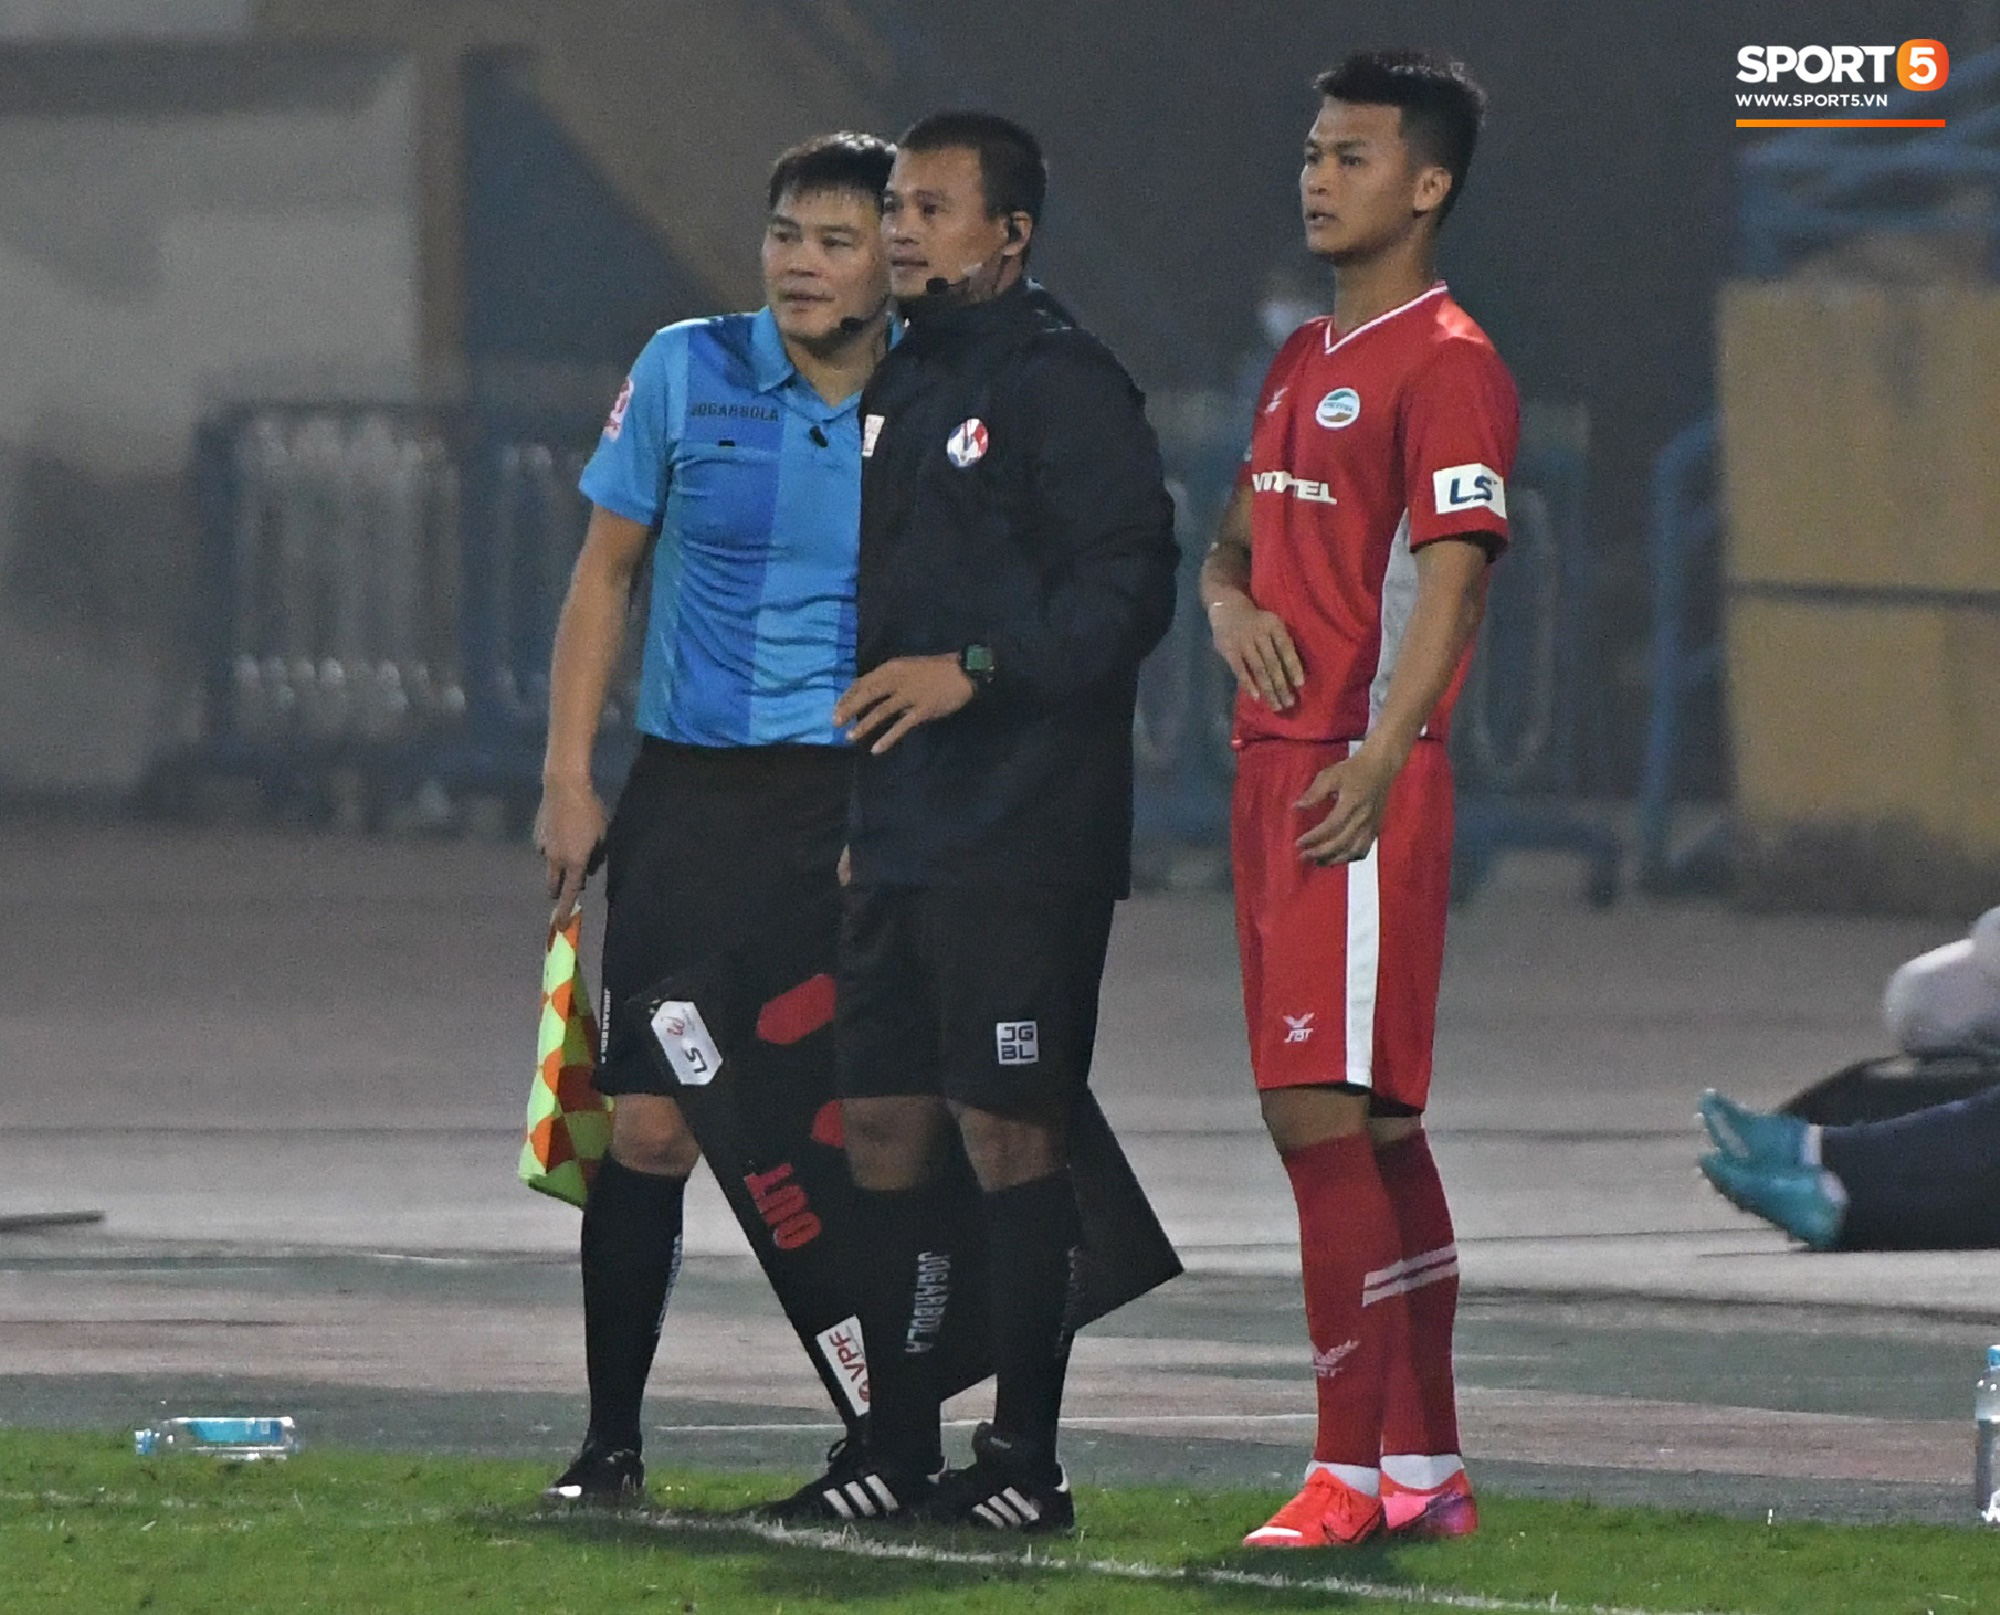 Cựu tuyển thủ U20 hồi sinh thần kỳ 2 năm sau chấn thương kinh hoàng nhất nhì bóng đá Việt, ghi điểm mạnh với trợ lý Lee Young-jin   - Ảnh 1.